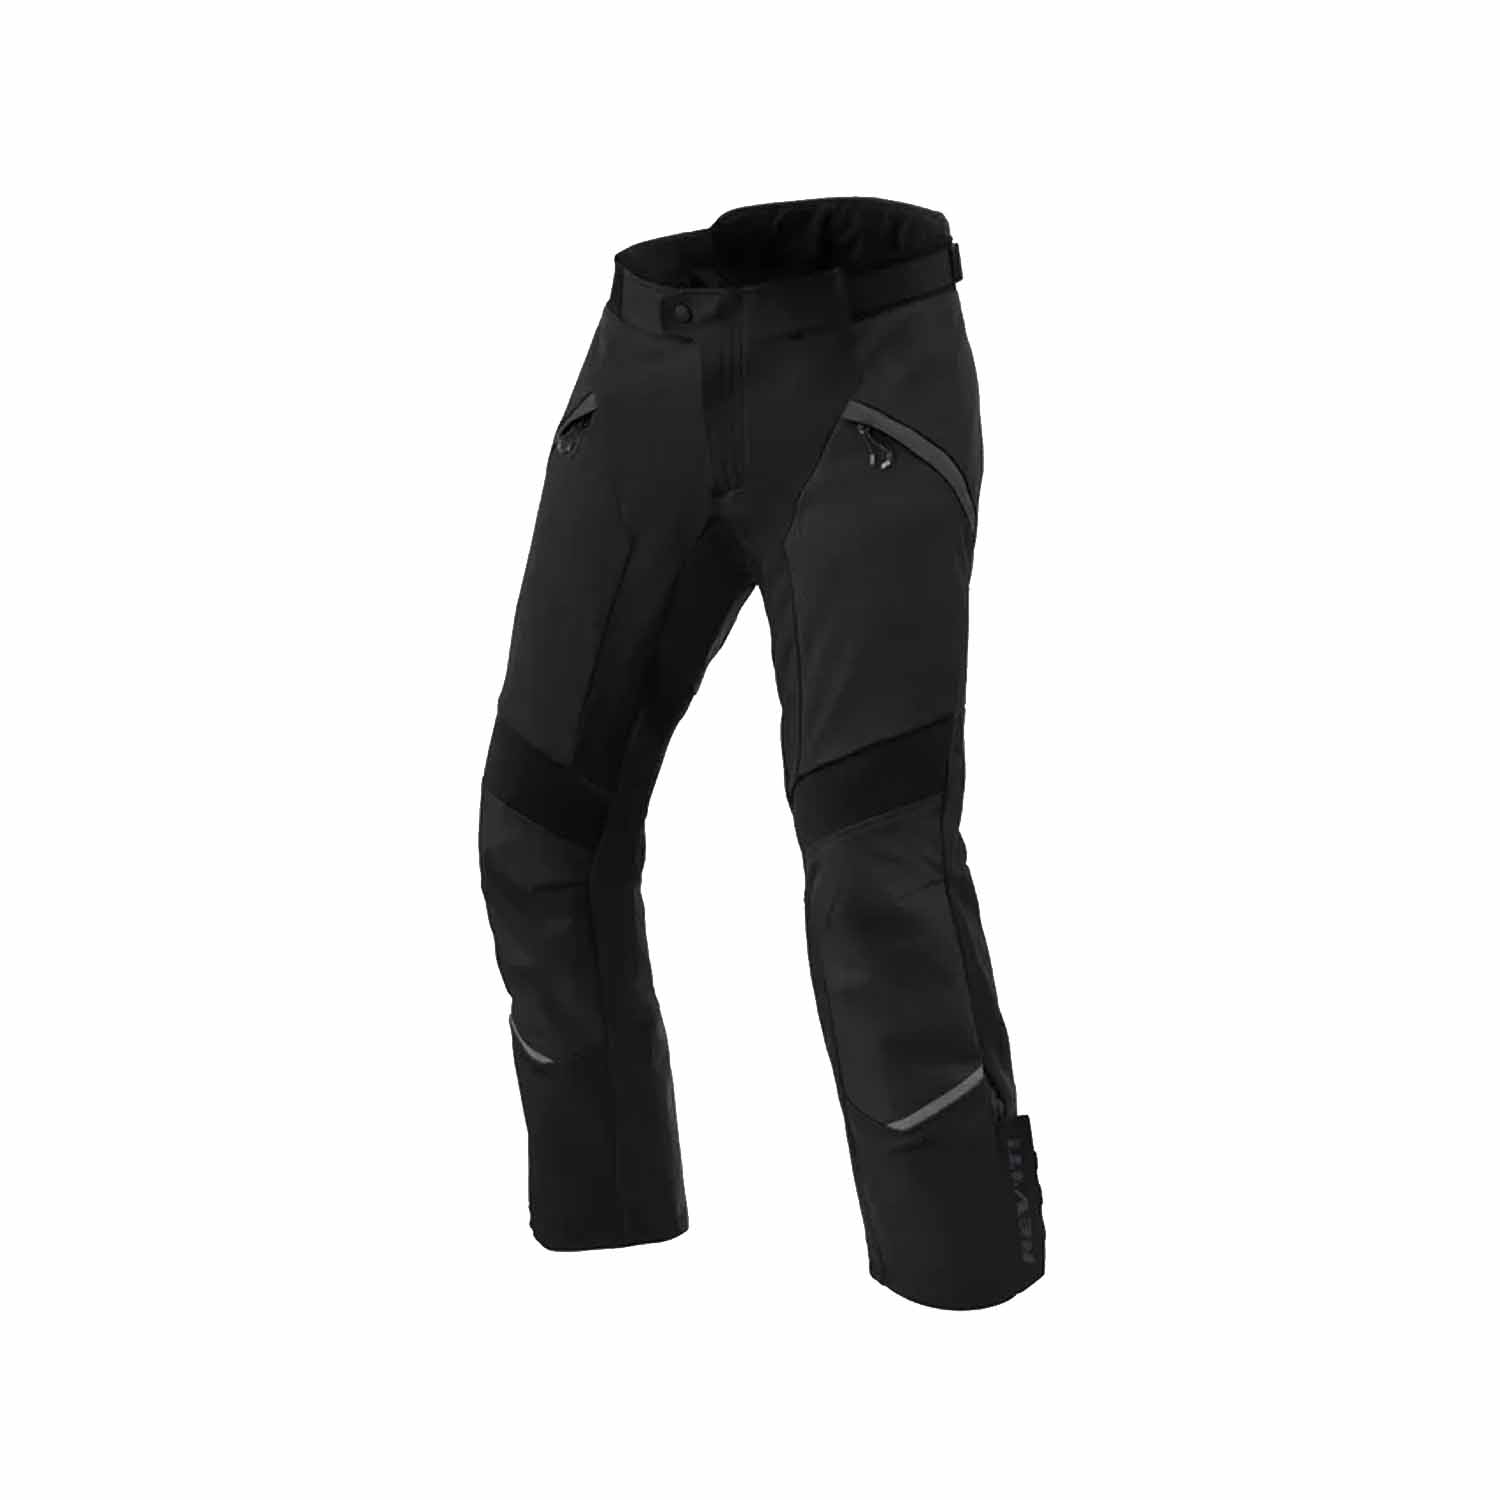 REV'IT! Airwave 4 Short Pants Black Motorcycle Pants Size L